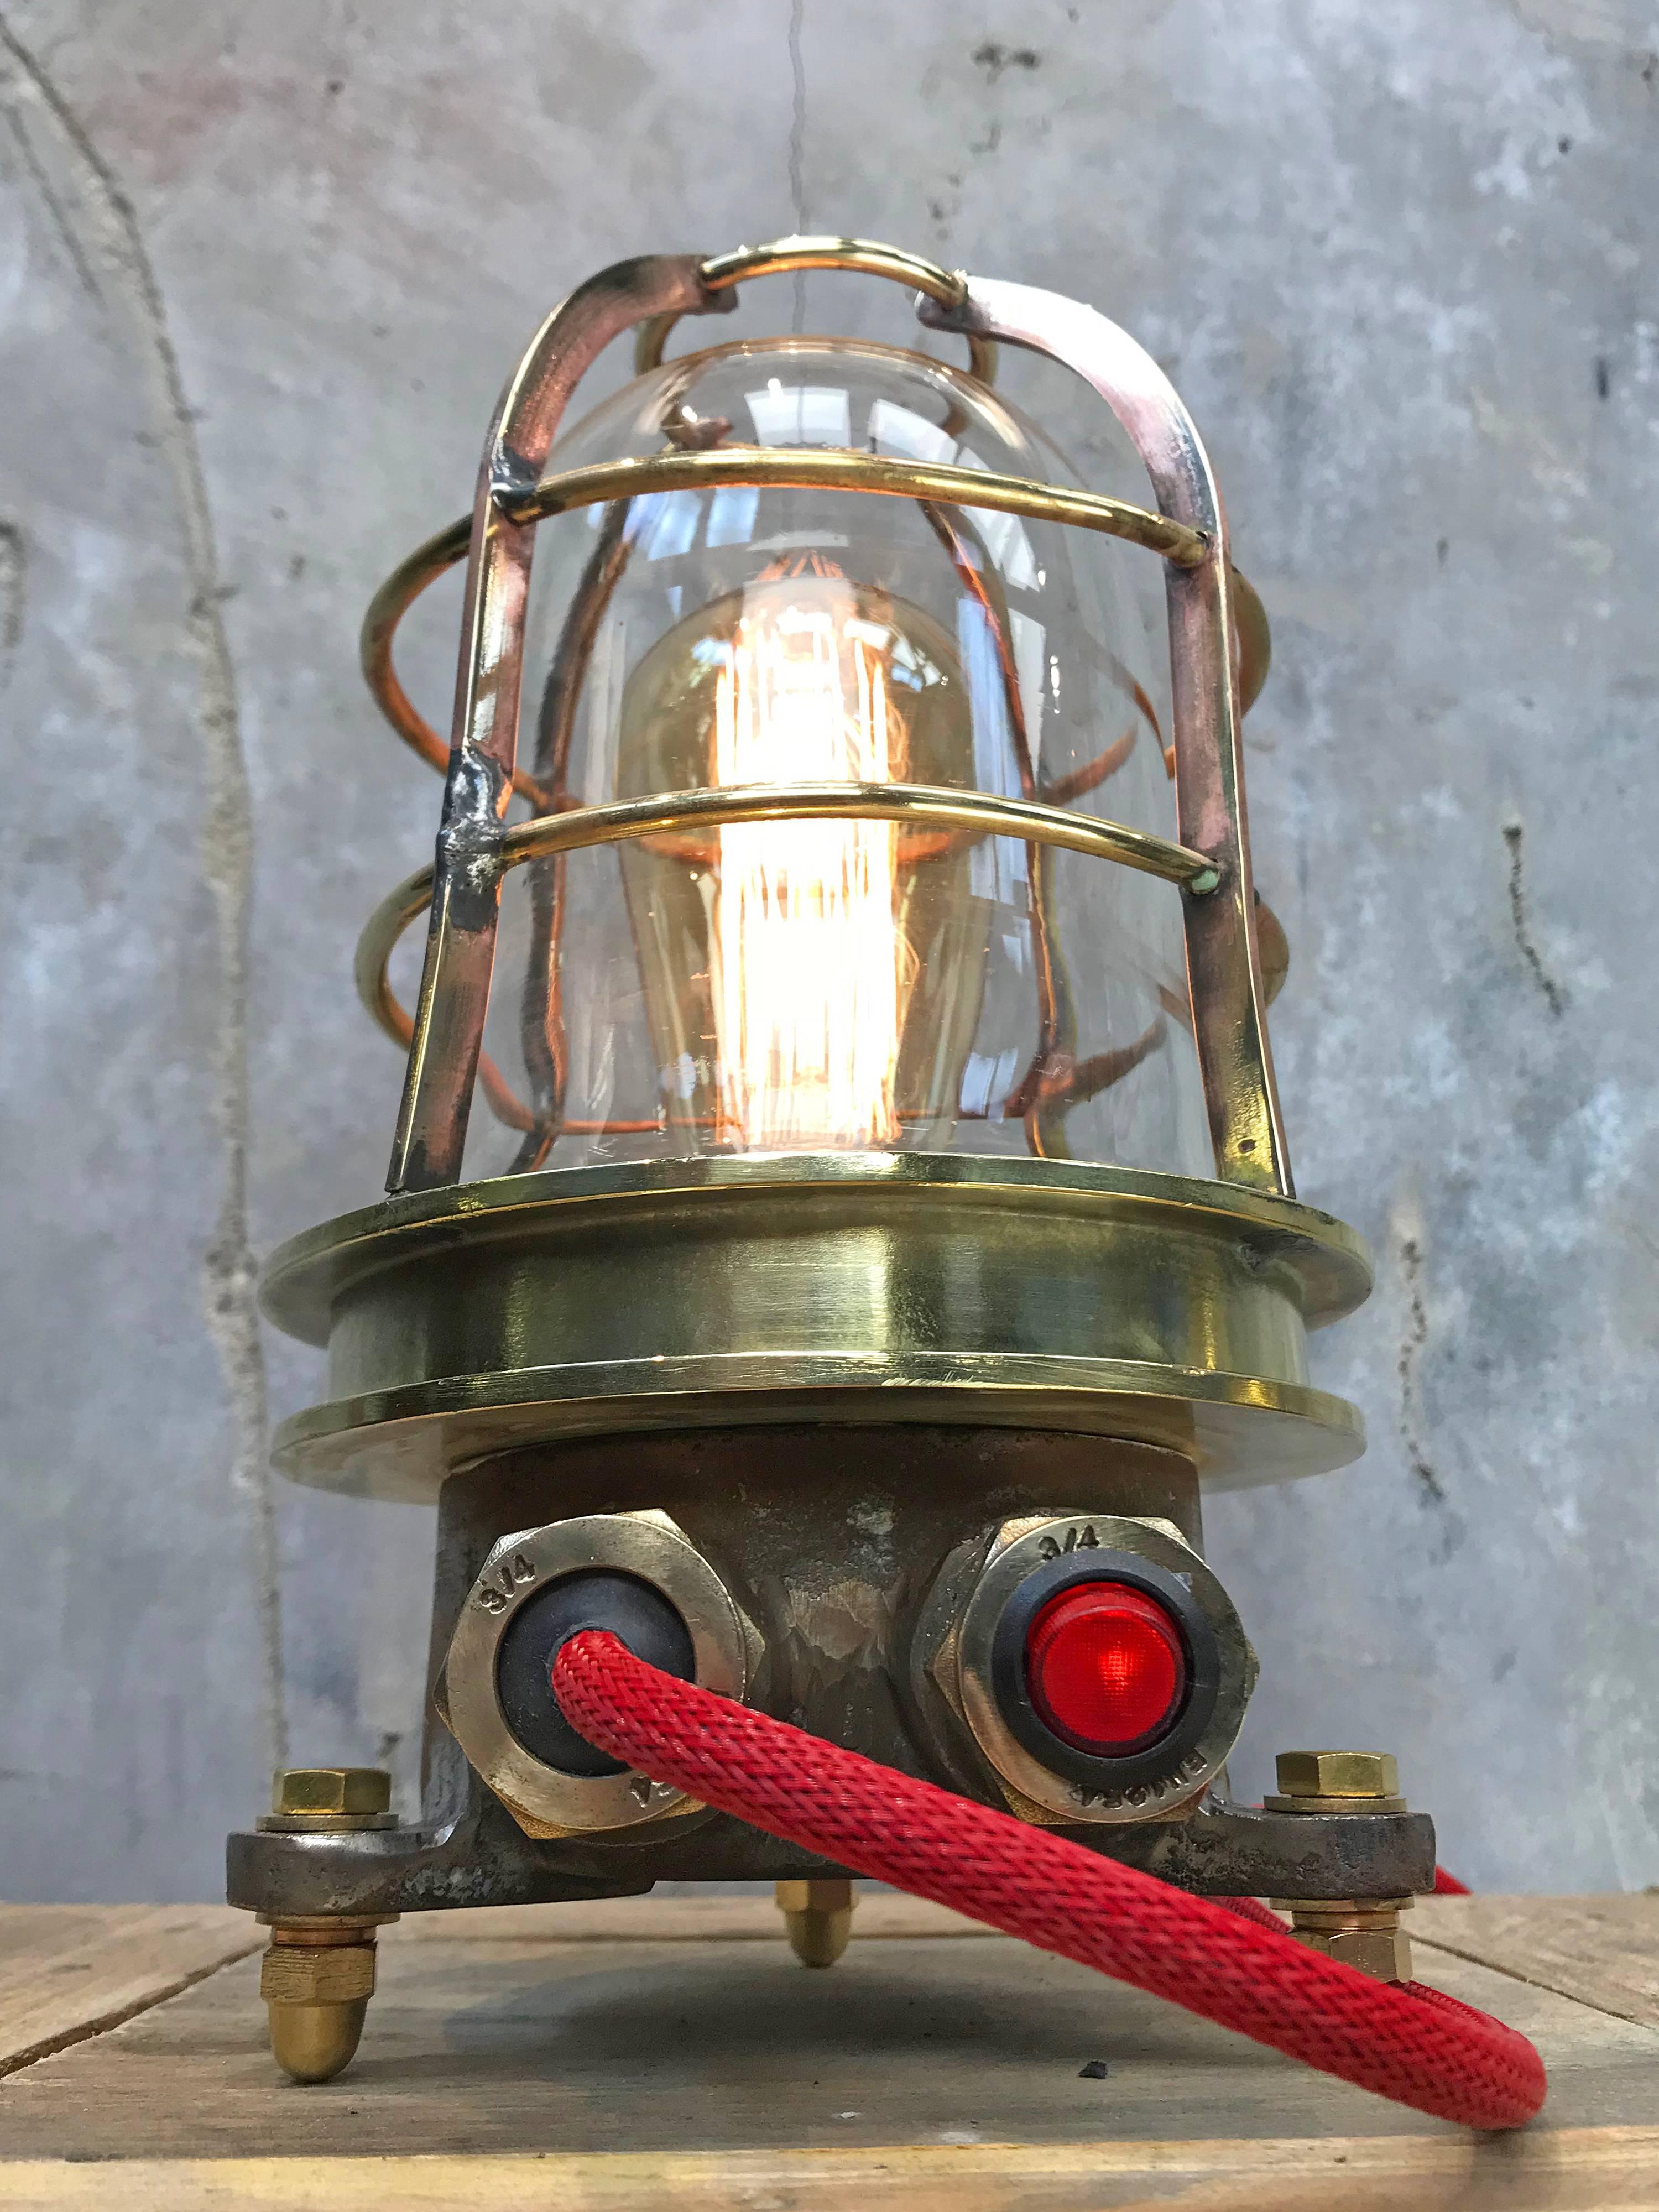 Explosionsgeschützte Schreibtischlampe aus Messingguss mit geflochtenem Kabel und rotem Glimmschalter.

Retro-Ausstattung mit rotem Schalter, UK-Stecker und alter Edison-Glühlampe E27.

Hergestellt in den 1980er Jahren von Kokosha, Osaka,